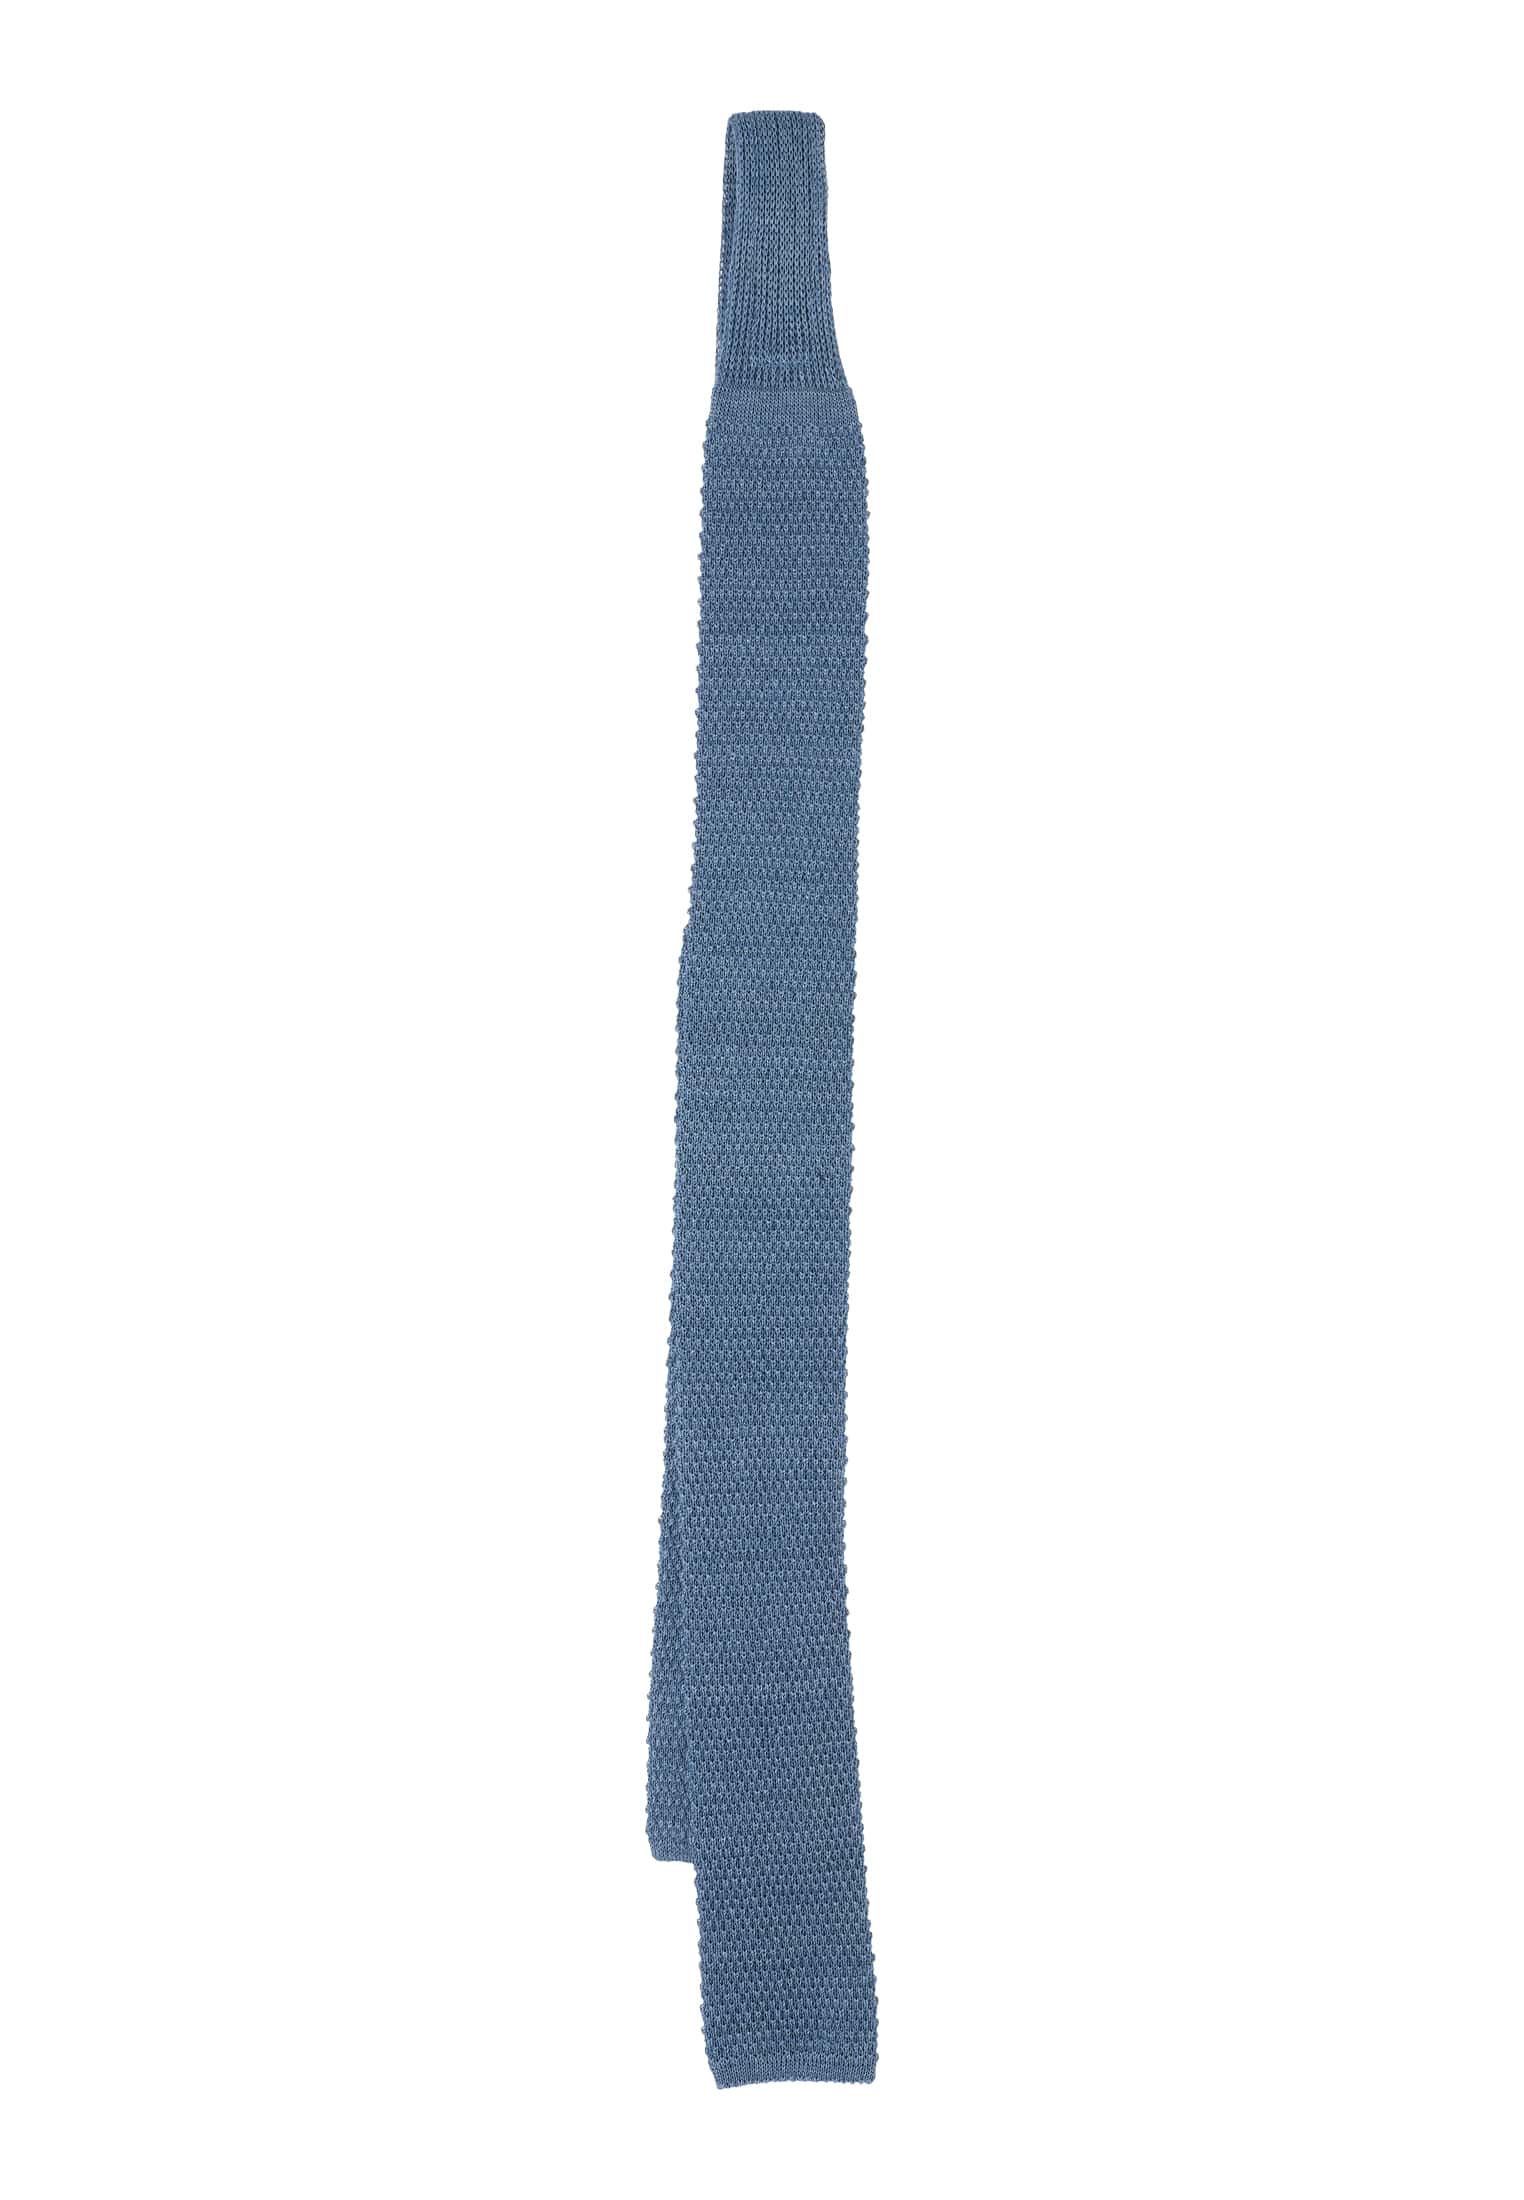 Cravate bleu gris uni